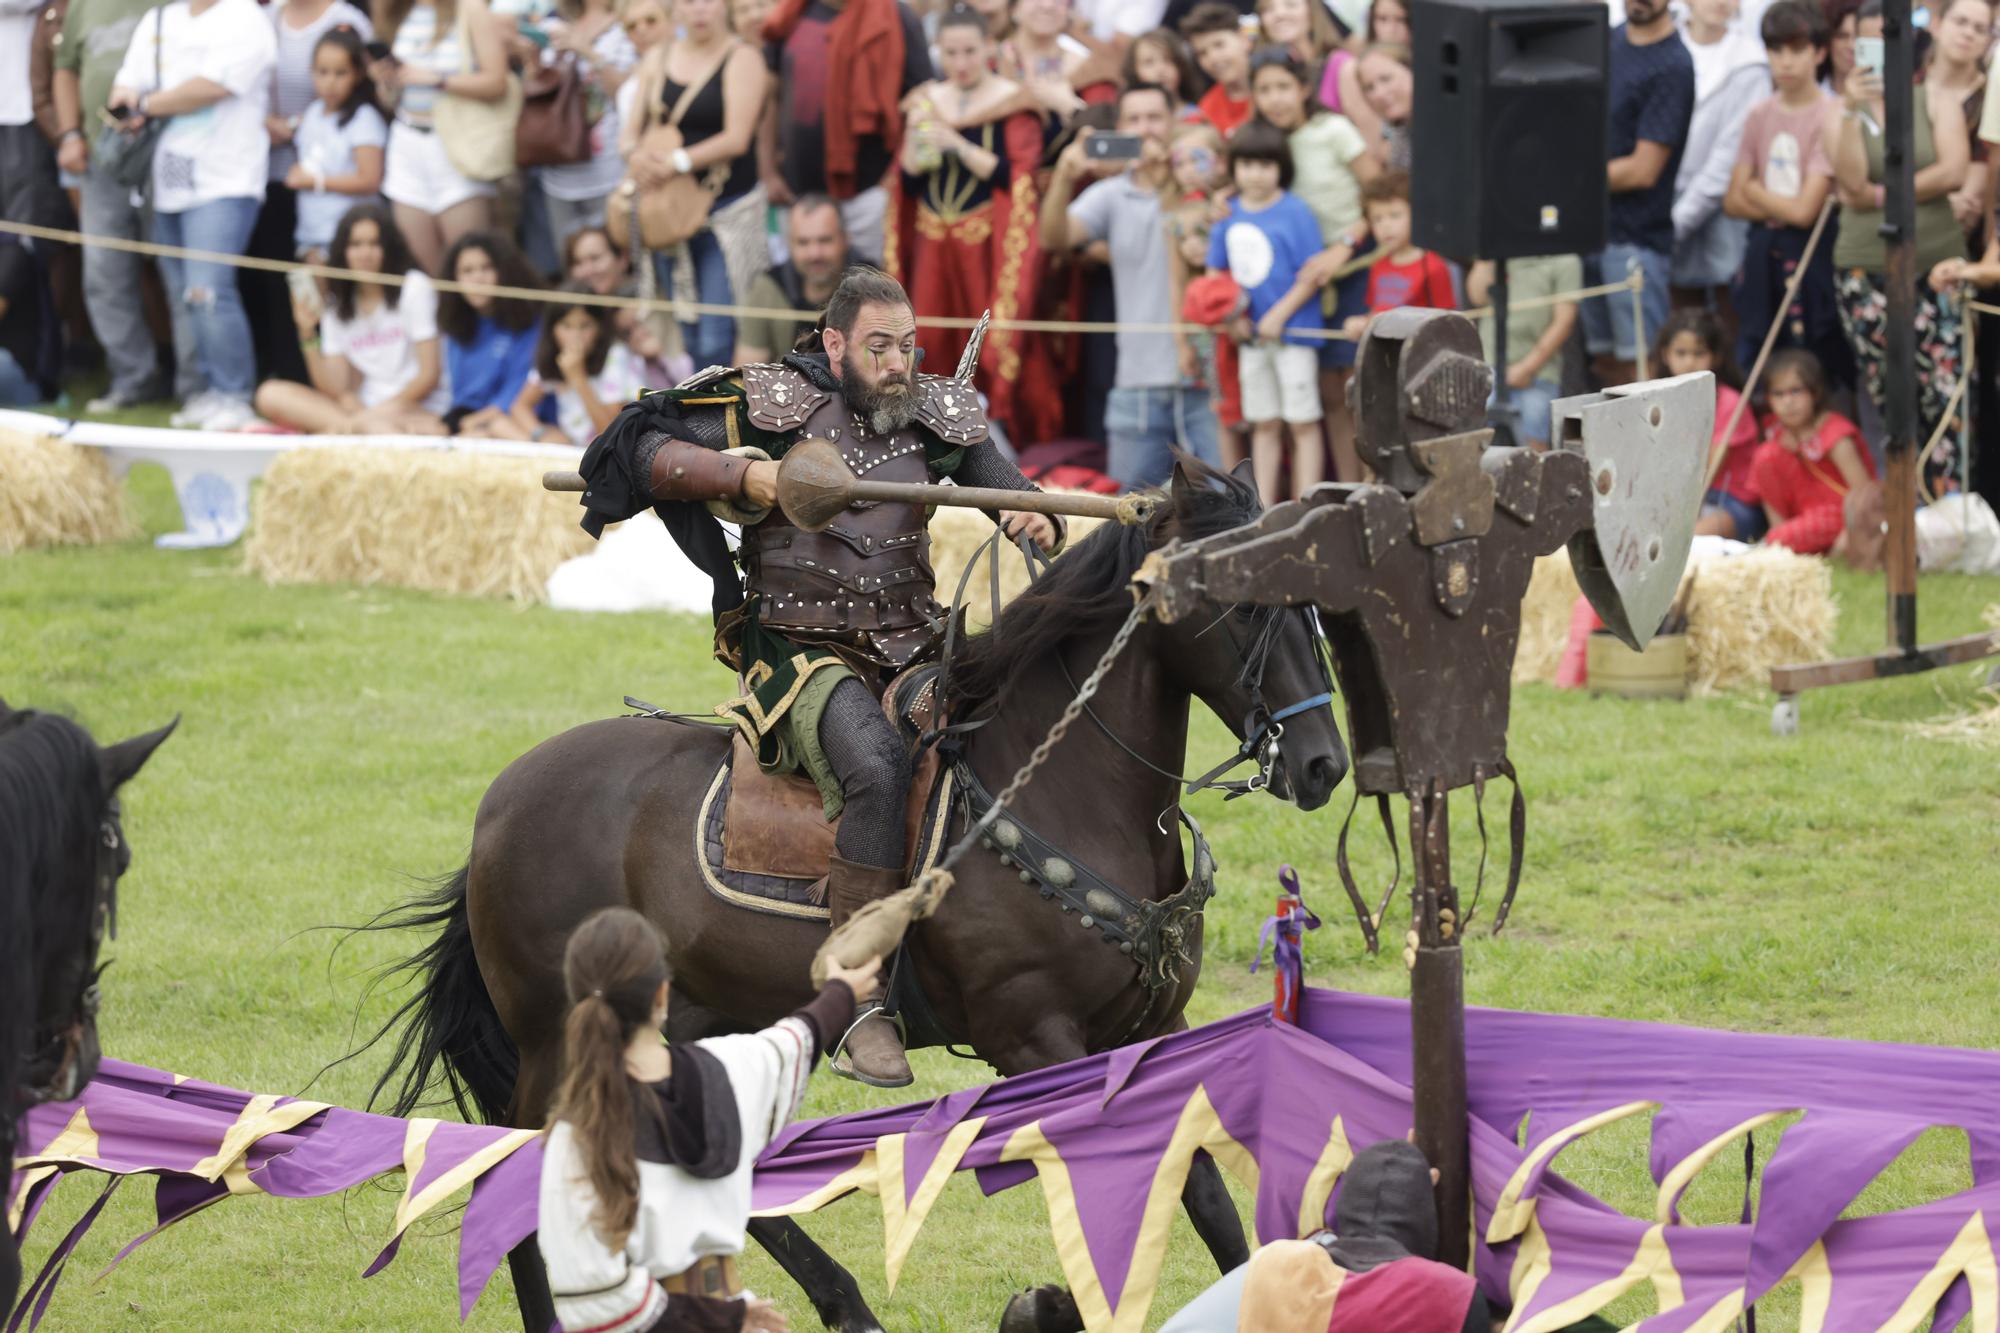 Miles de personas abarrotan el ferial para ver los torneos medievales de Exconxuraos